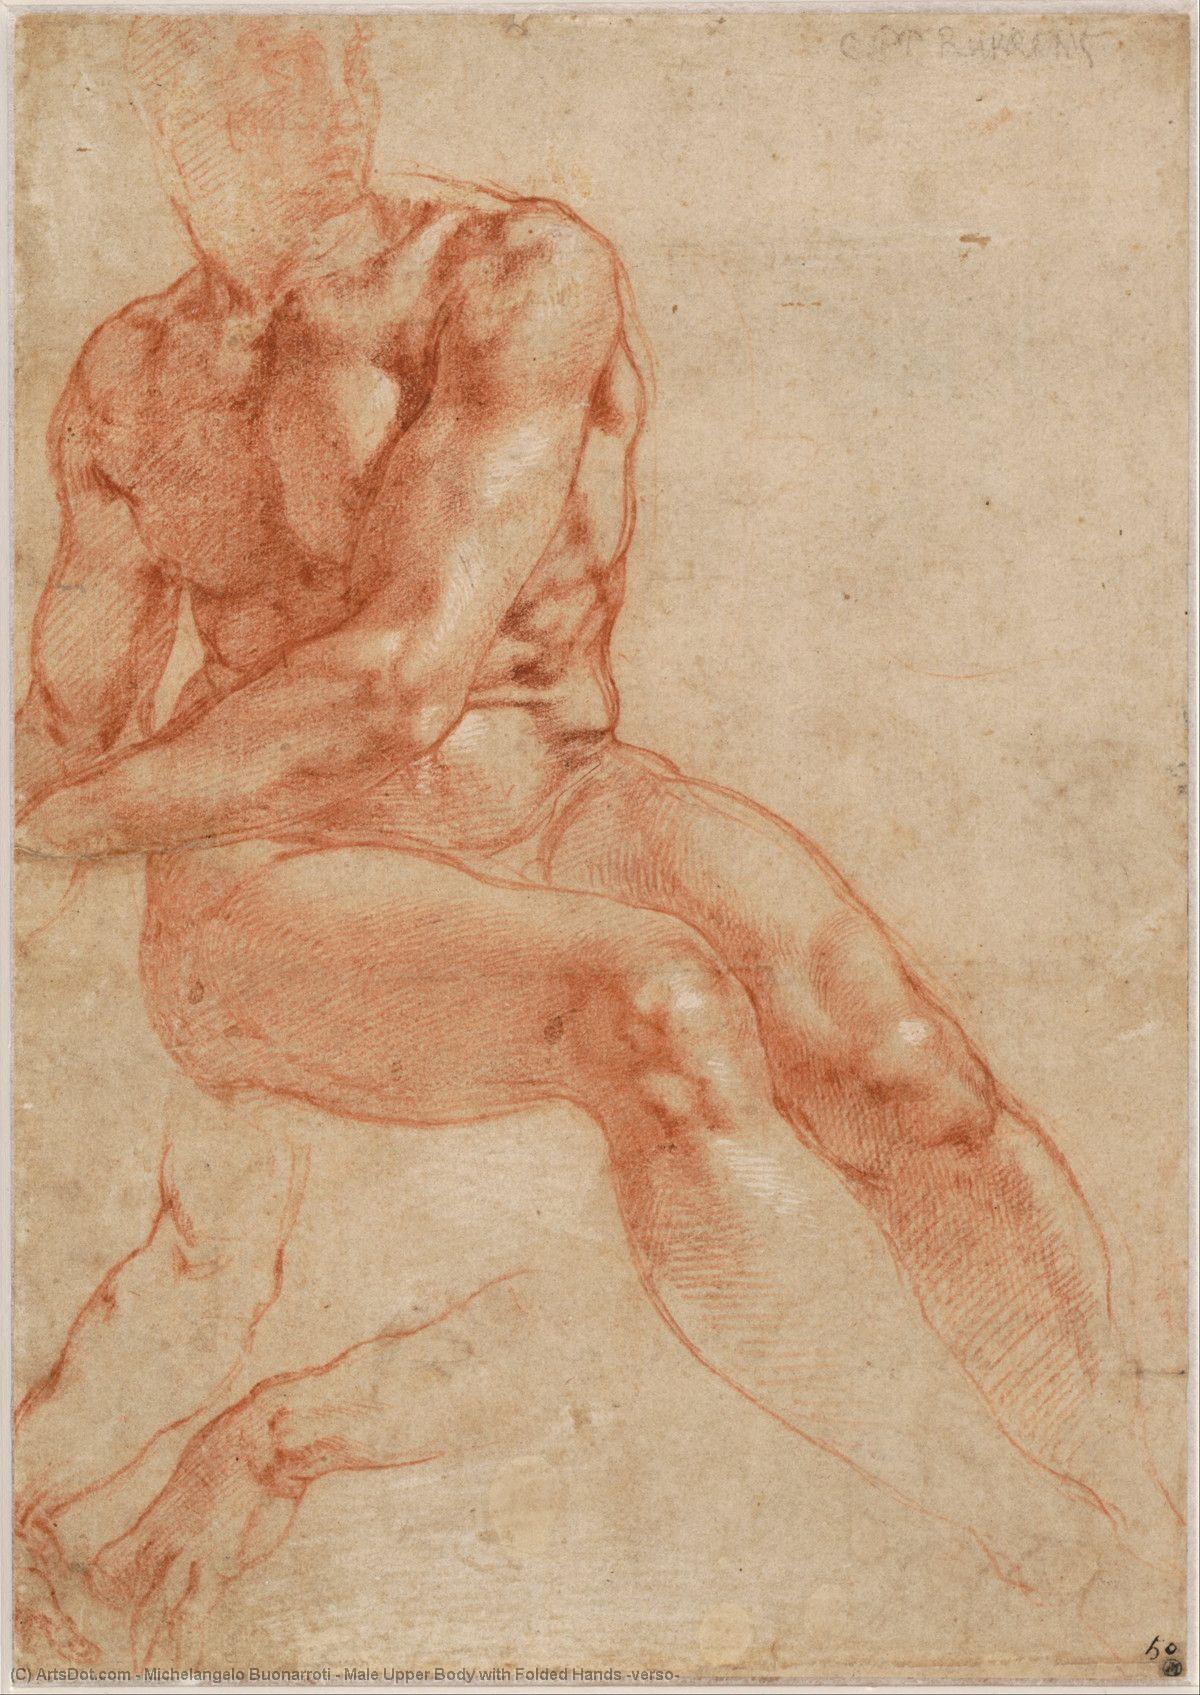 Compre Museu De Reproduções De Arte Corpo superior masculino com mãos dobradas (verso), 1511 por Michelangelo Buonarroti (1475-1564, Italy) | ArtsDot.com